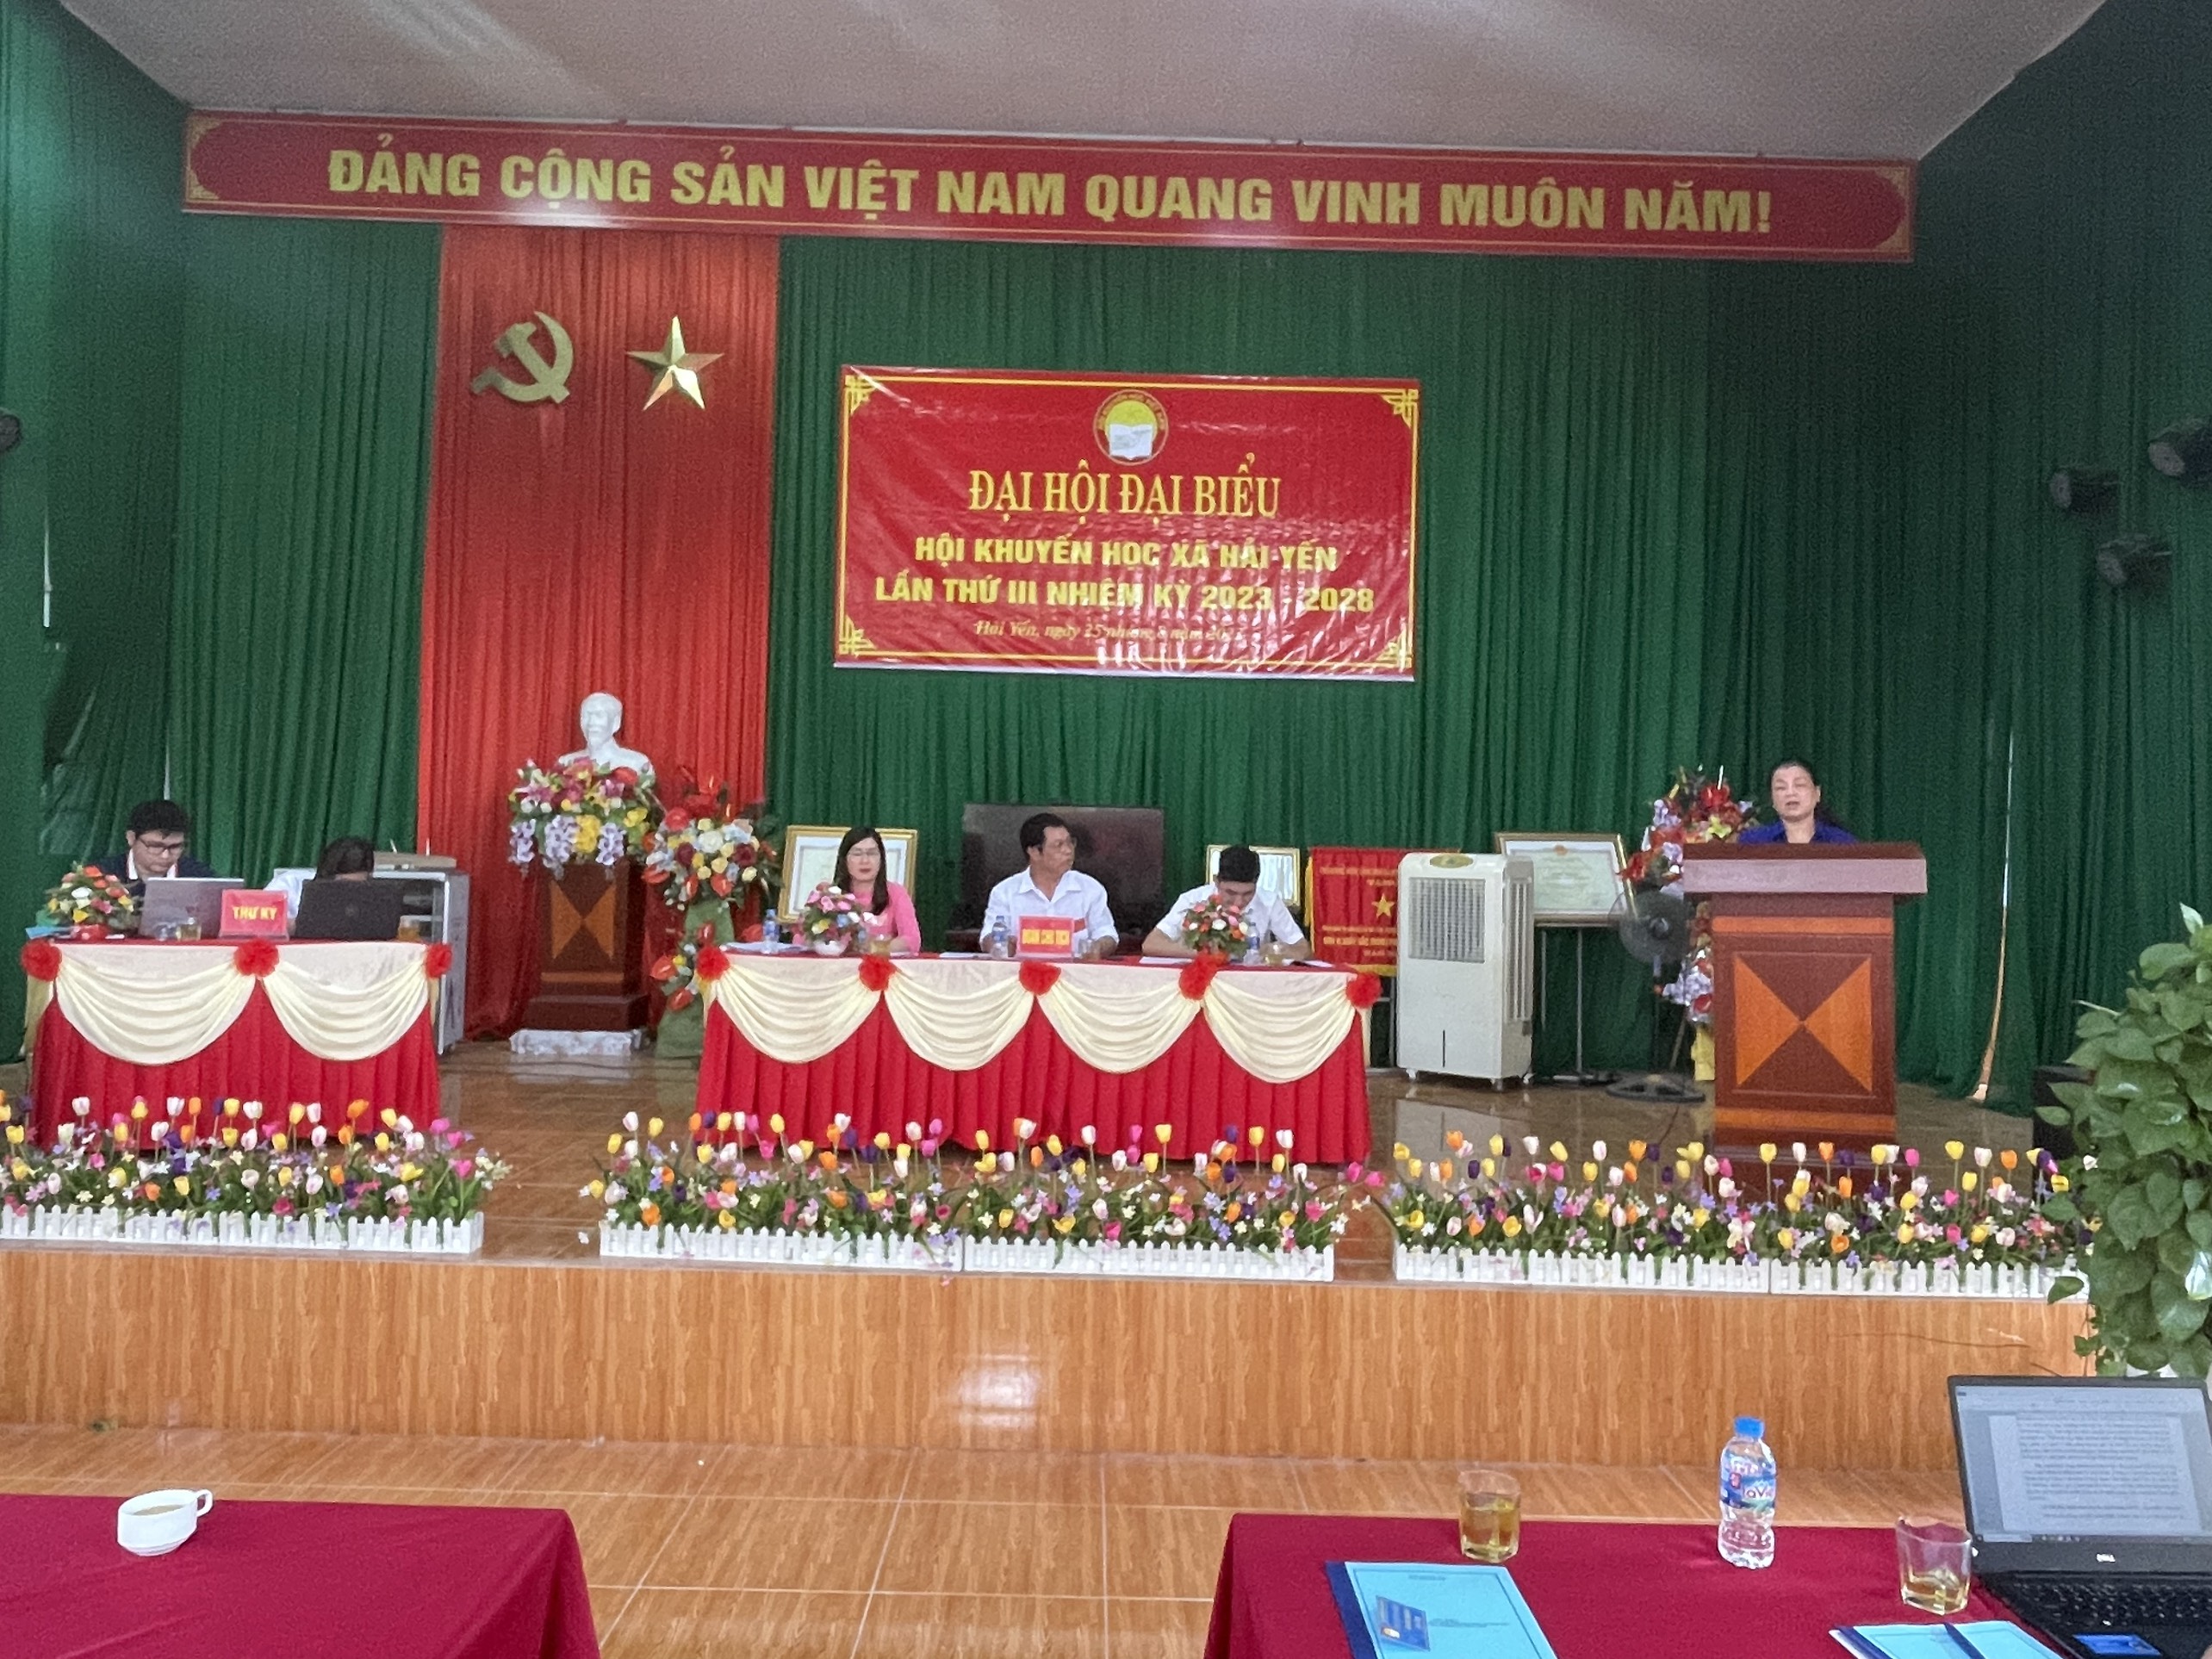 Đồng chí Nguyễn Thị Kim Doan, Chủ tịch Hội khuyến học huyện Cao Lộc